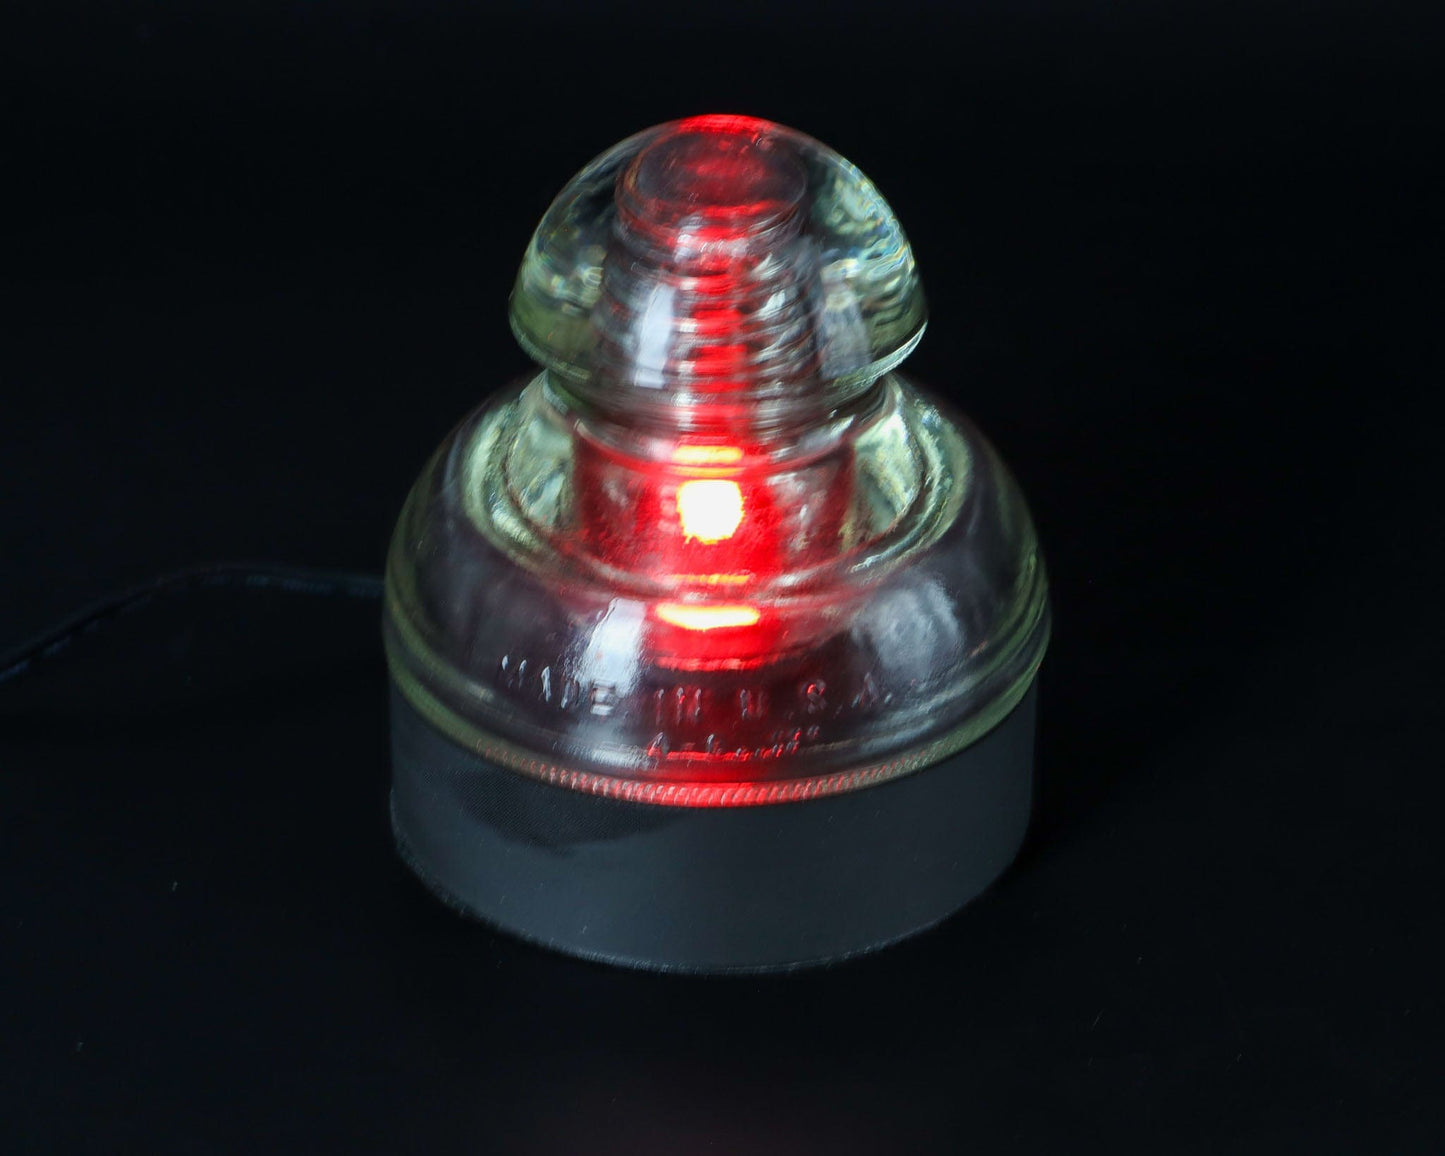 LightAndTimeArt Lamp base Lamp Base for "Hemingray-71" Glass Insulators